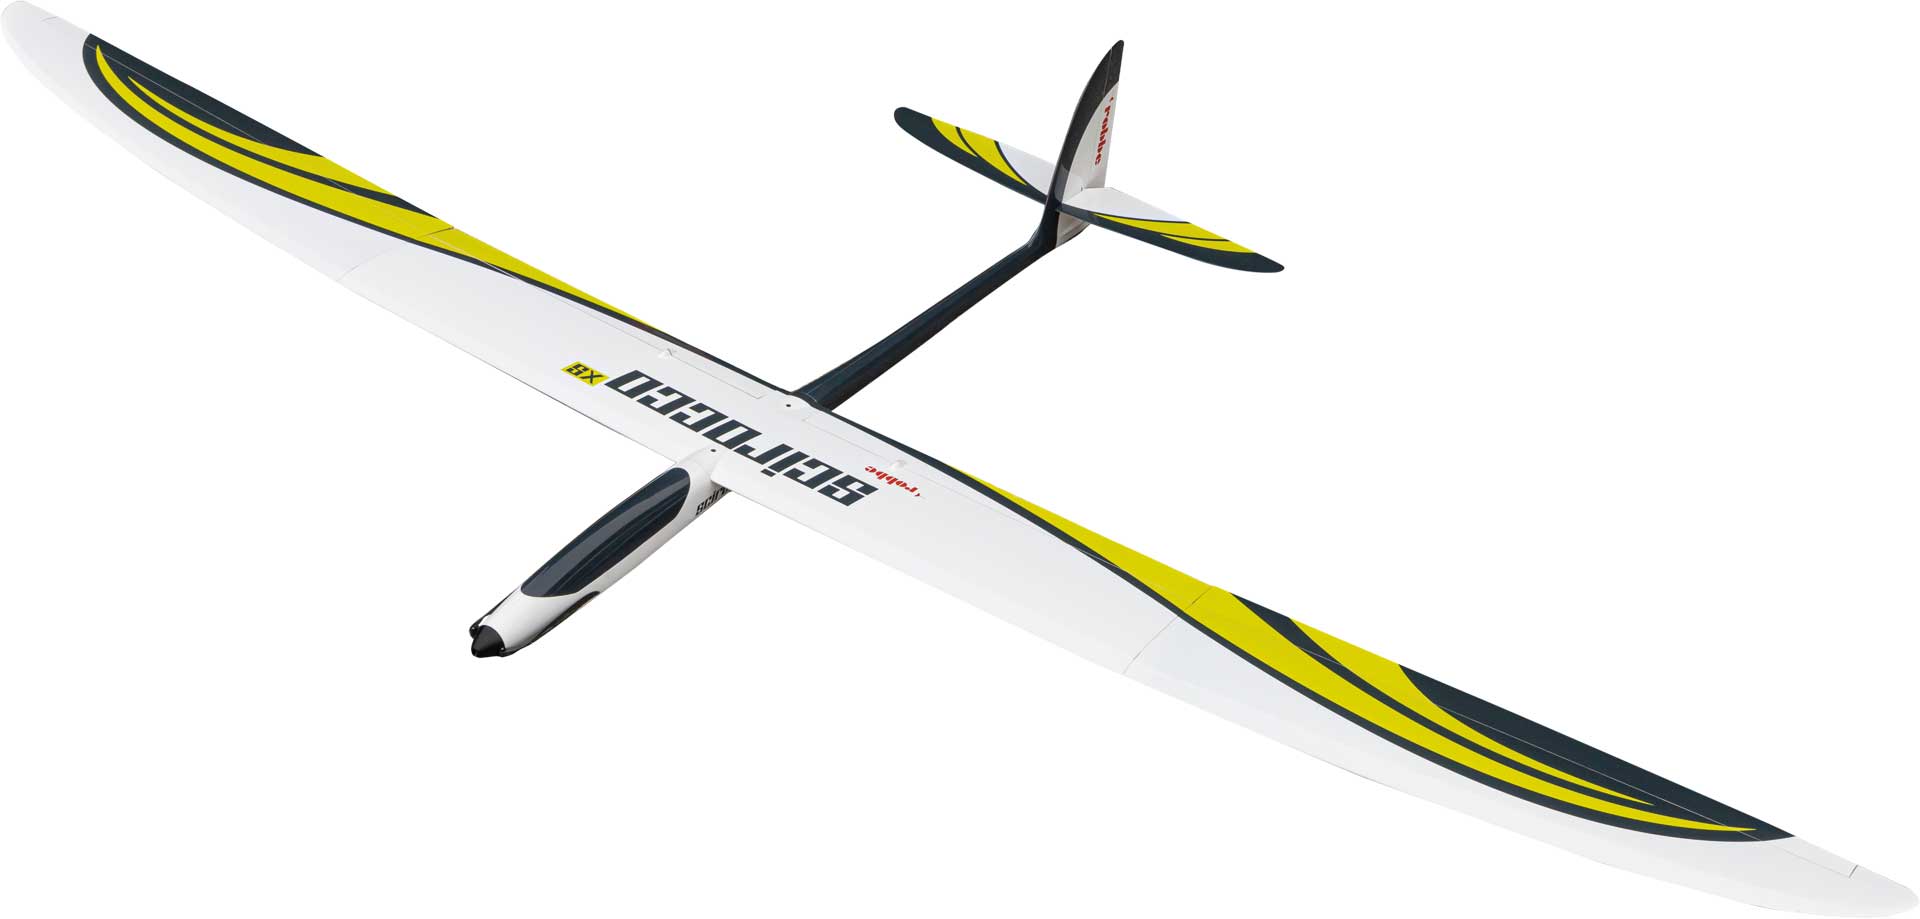 Robbe Modellsport Scirocco XS 3,25m ARF (lime) entièrement en fibre de verre Planeur haute performance avec aile à 4 volets